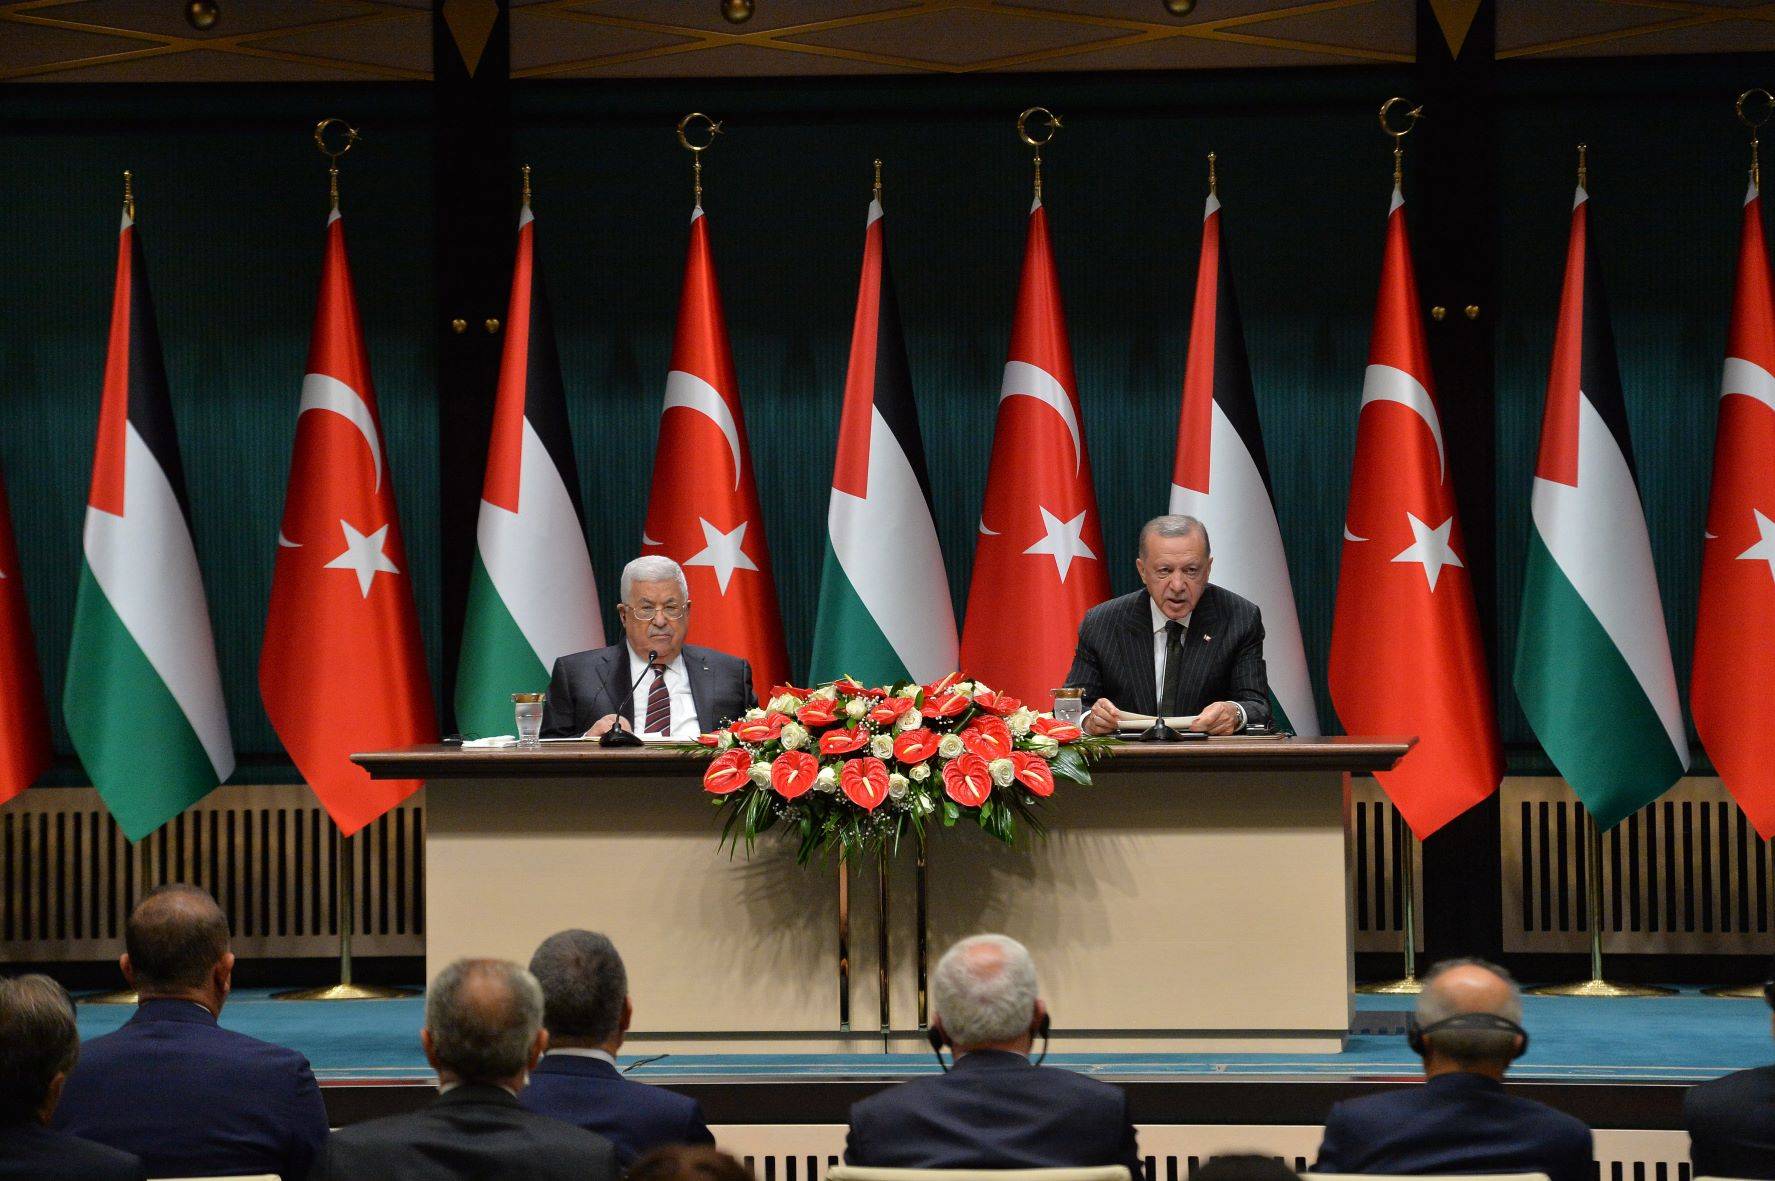 以色列與土耳其領導人十四年來首次面對面會談 | Now 新聞